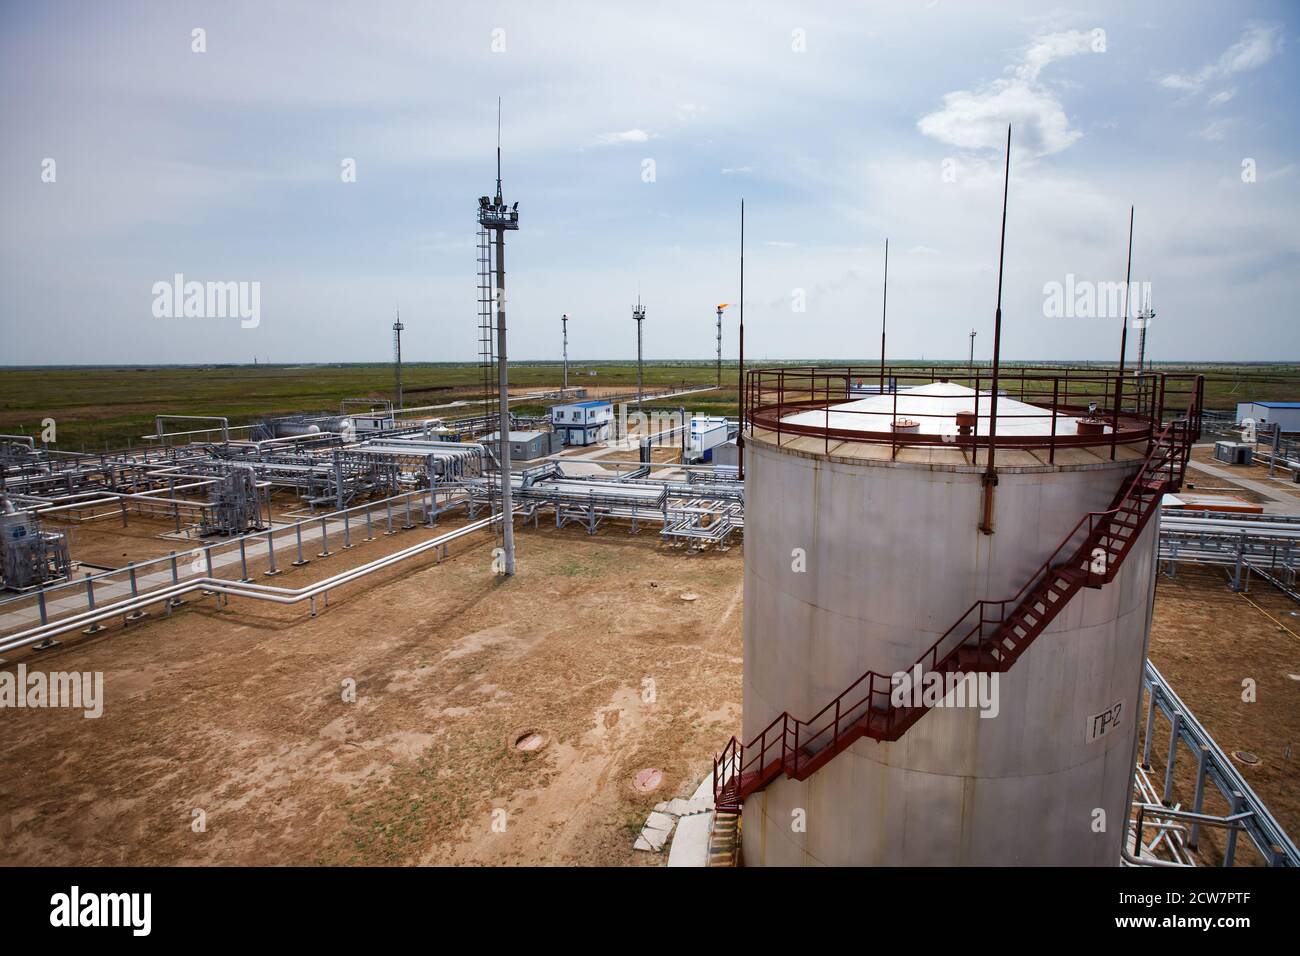 Gisement de pétrole de Zhaik-Munai, Kazakhstan. Usine de raffinerie de pétrole dans les sables. Réservoir de stockage de pétrole, mâts, pipelines. Torche à gaz orange en arrière-plan. Ciel bleu Banque D'Images